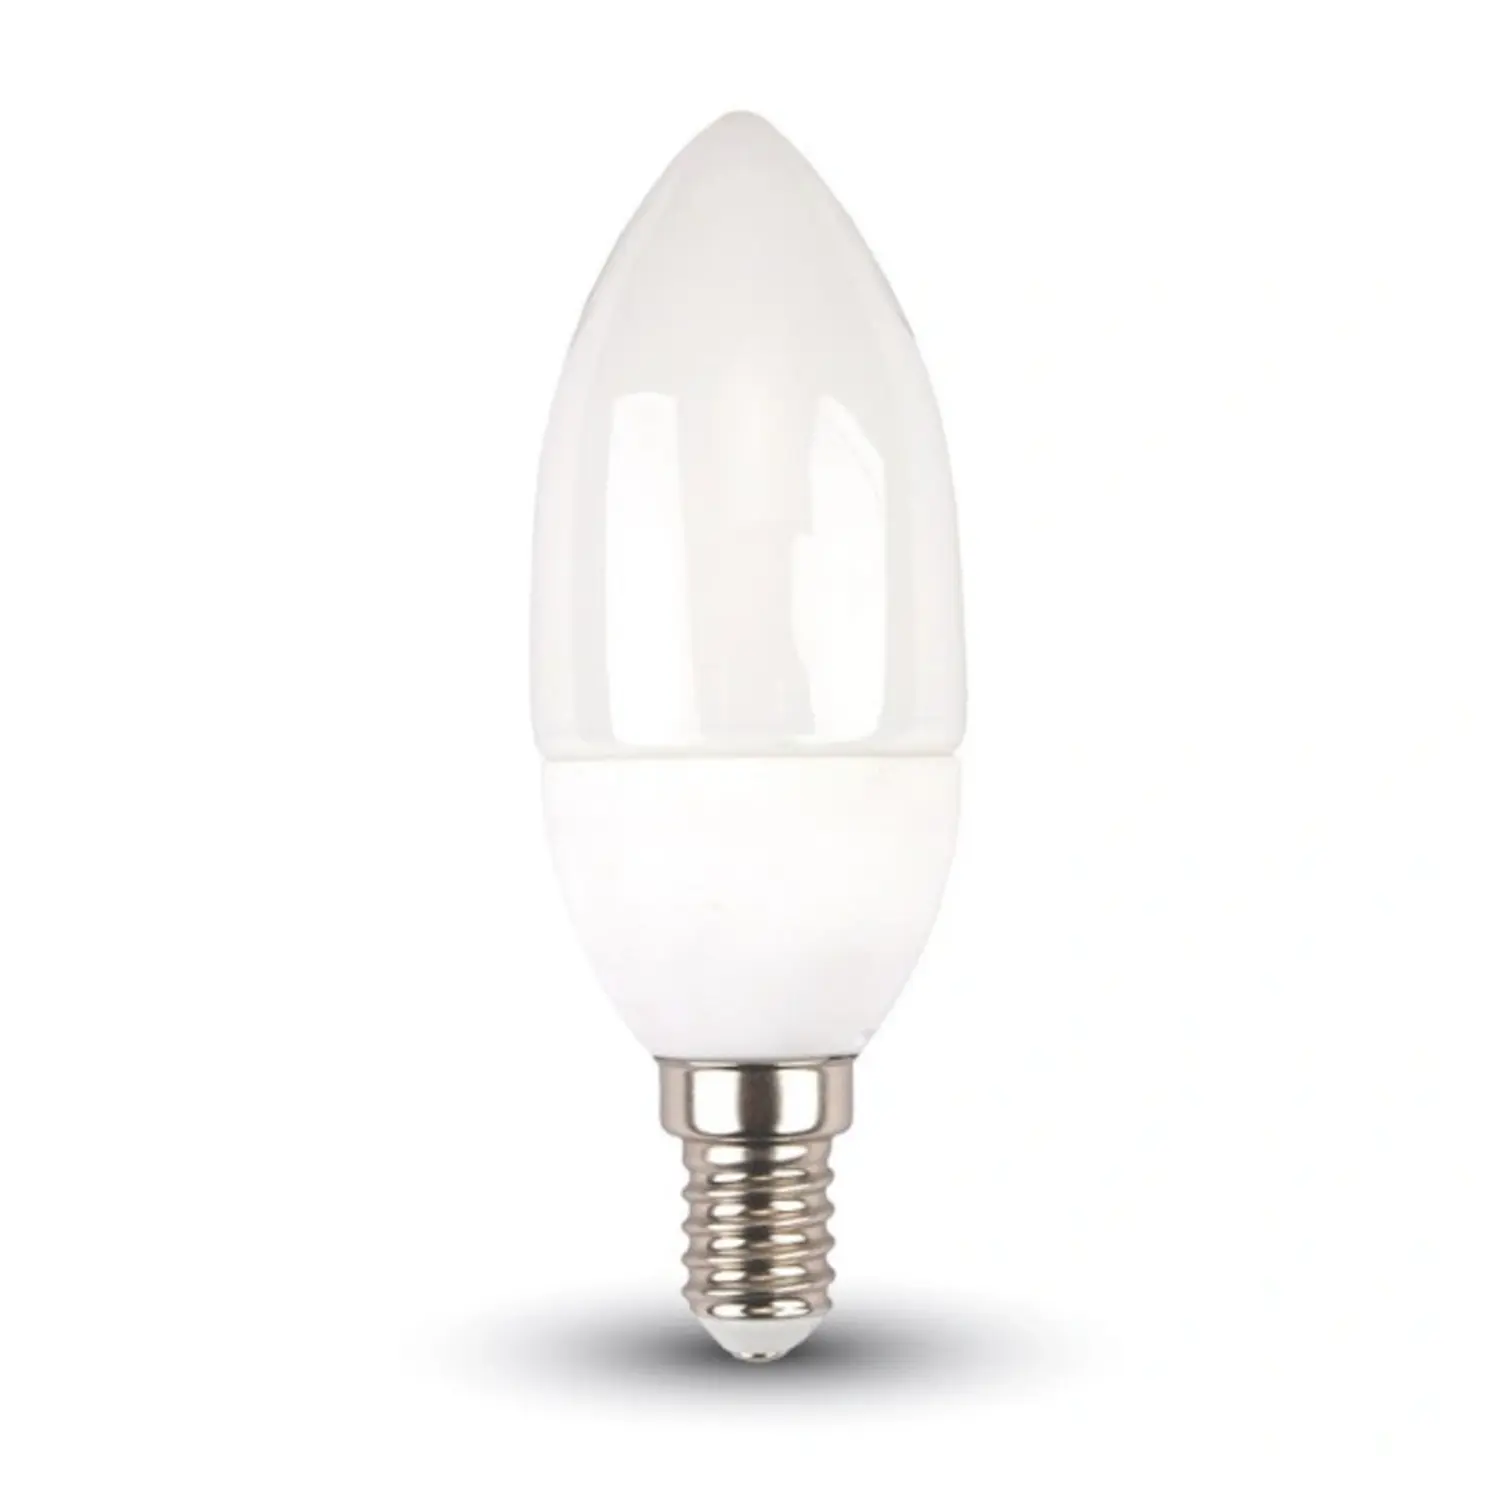 immagine del prodotto lampadina led candela oliva chip samsung e14 5,50 watt bianco freddo